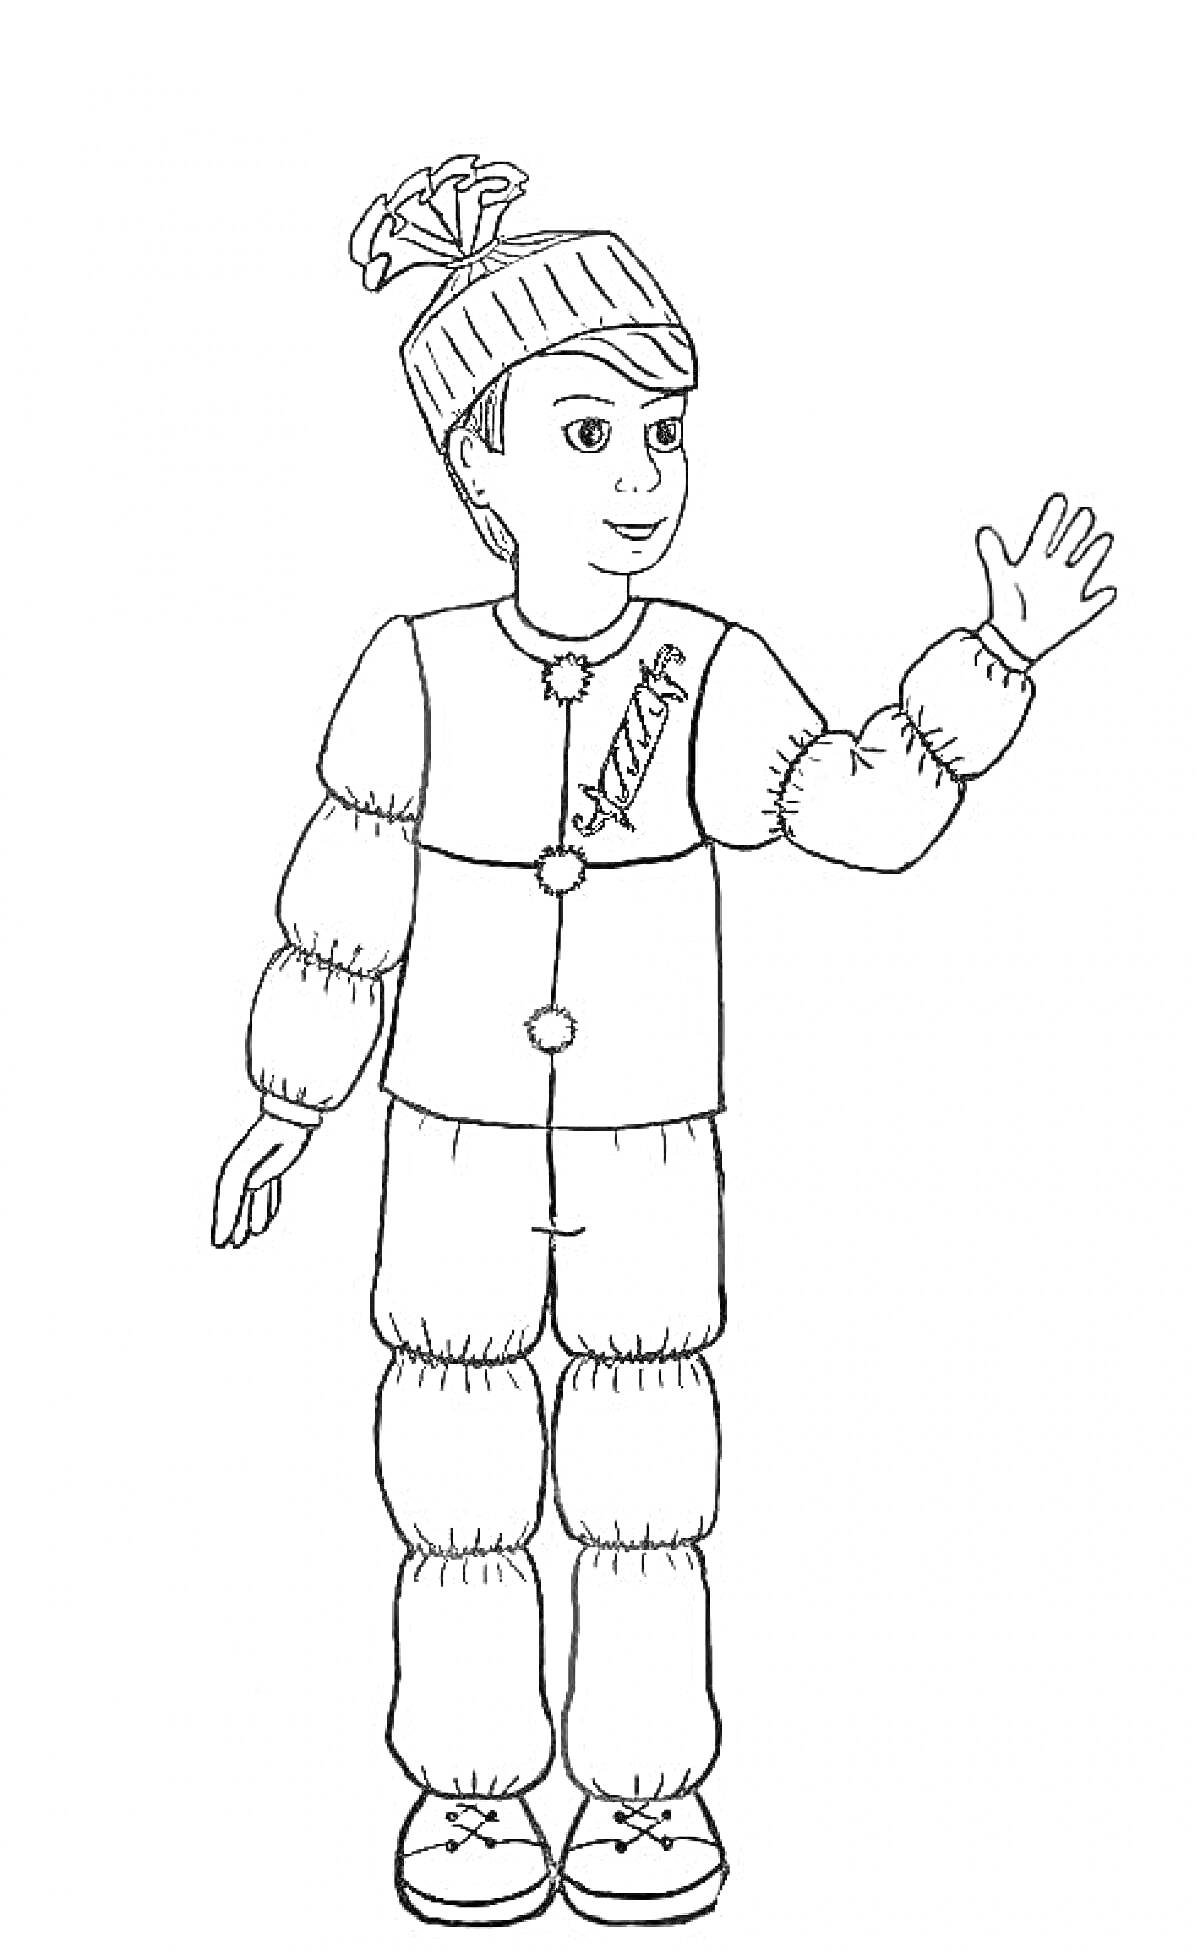 Раскраска Человек в костюме хлопушки: шапка с бантом, пуговицы, рисунок хлопушки на куртке, рука поднята